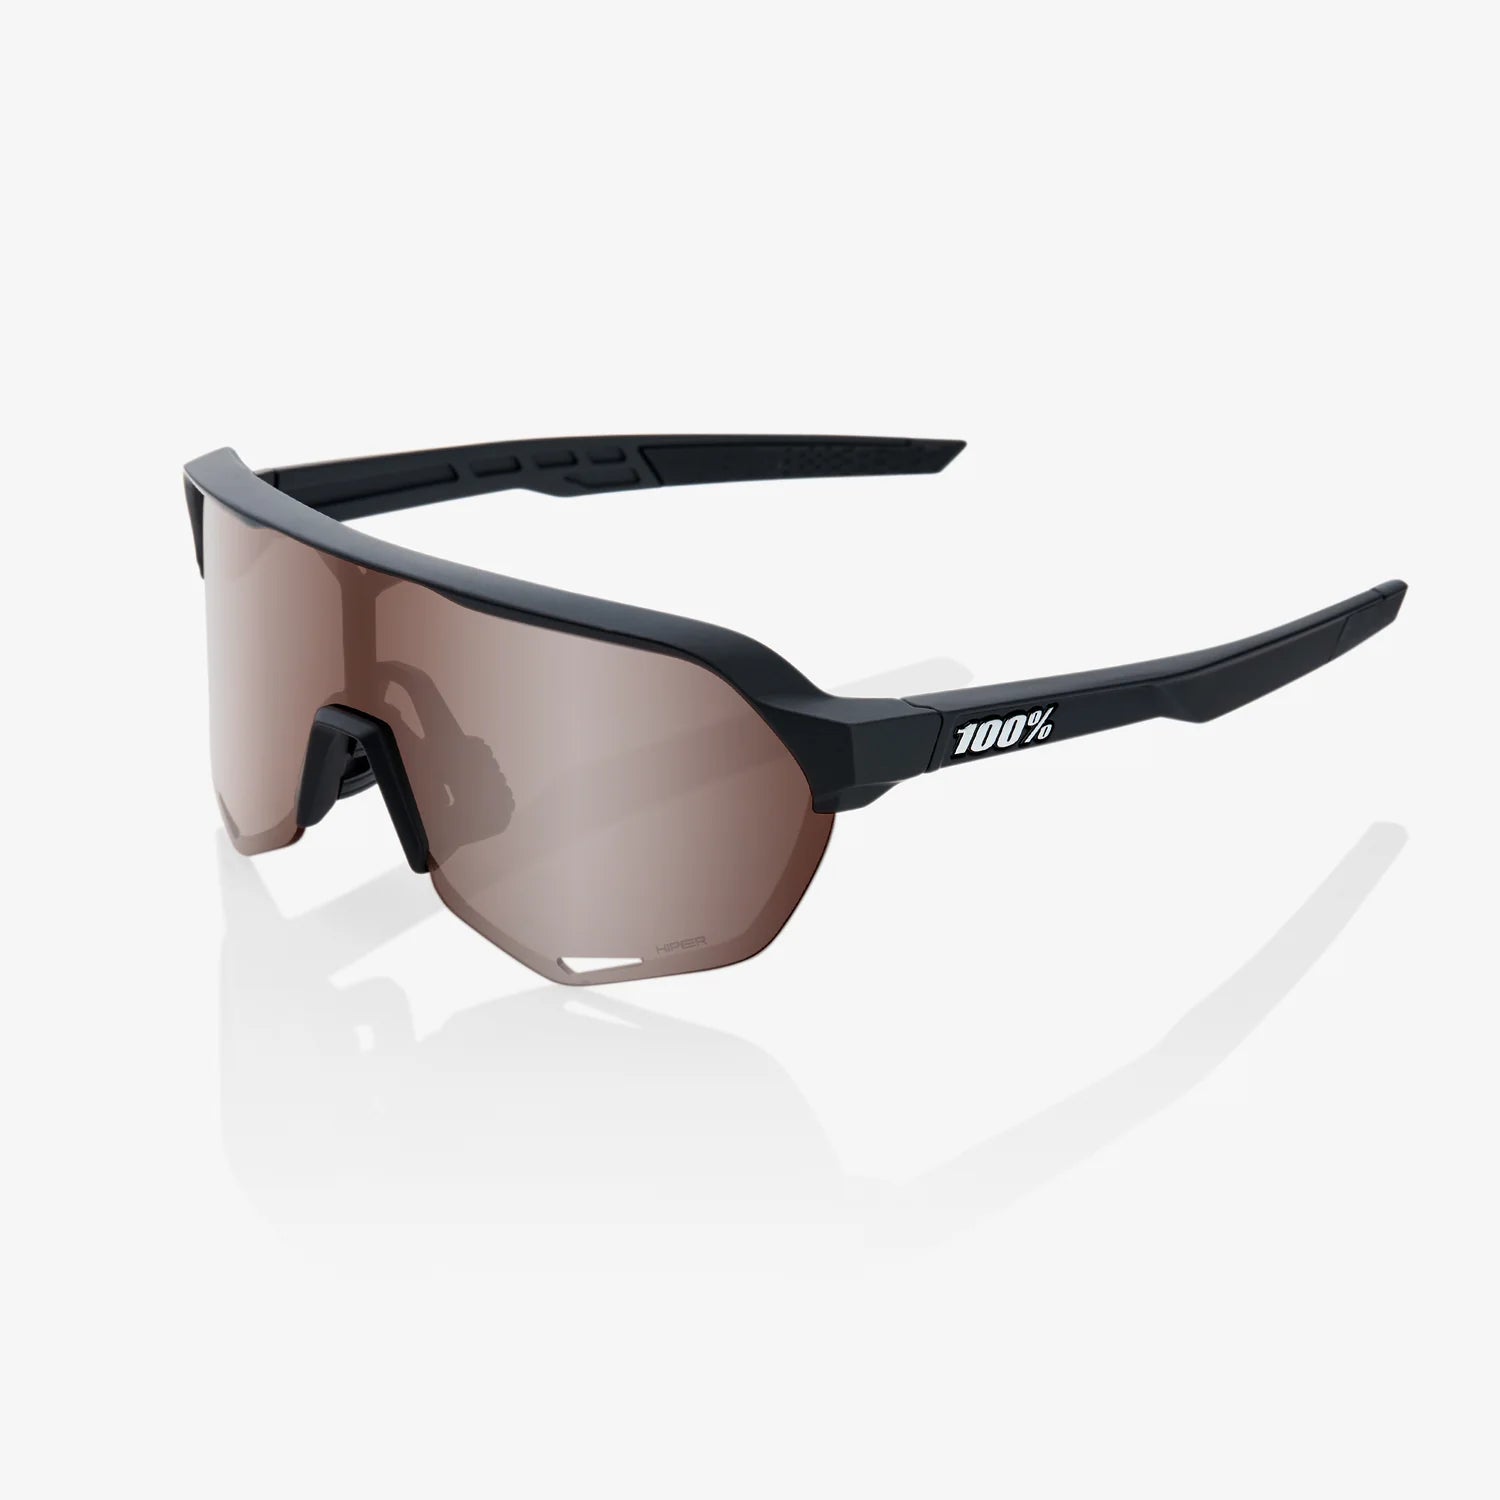 100 Percent Sunglasses - S2 - Soft Tact Black - HiPER¨ Crimson Silver Mirror Lens